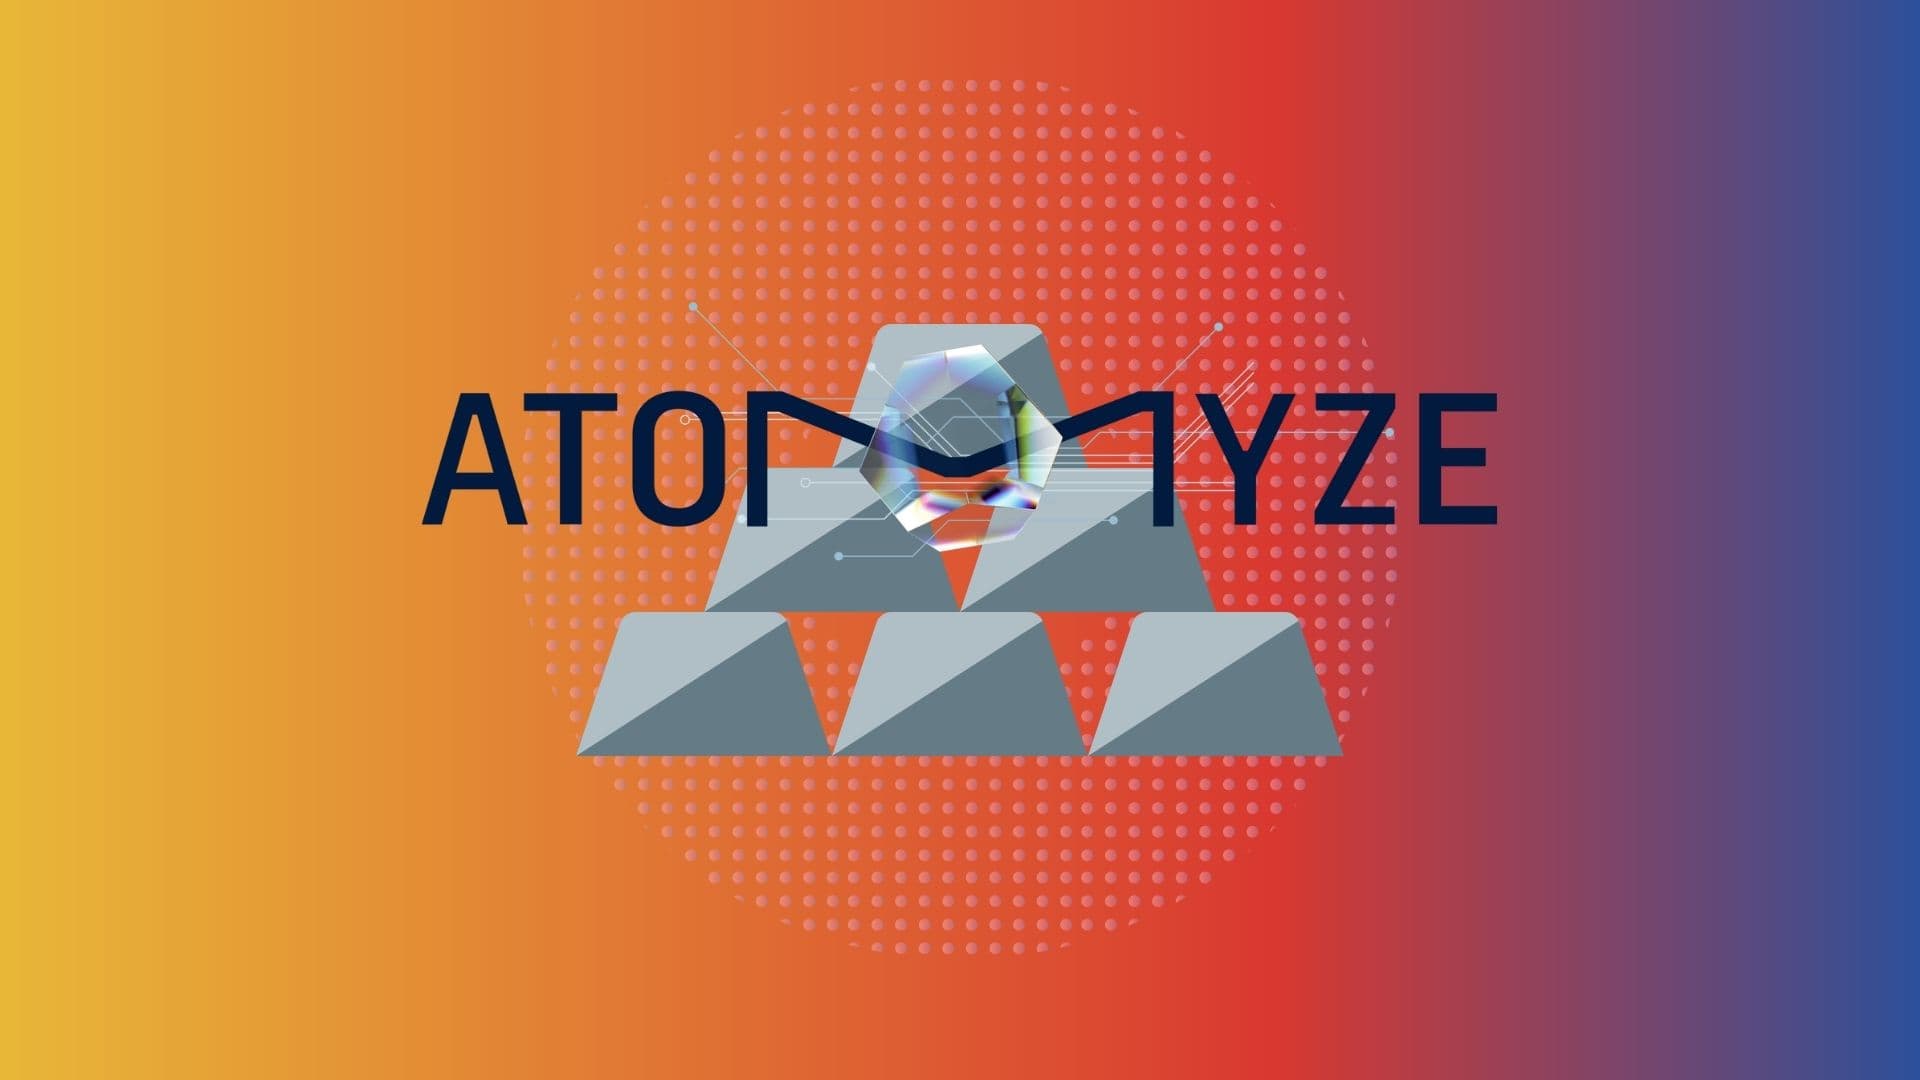 В России зарегистрирована первая управляющая компания в криптосфере - Atomyze на основе Hyperledger